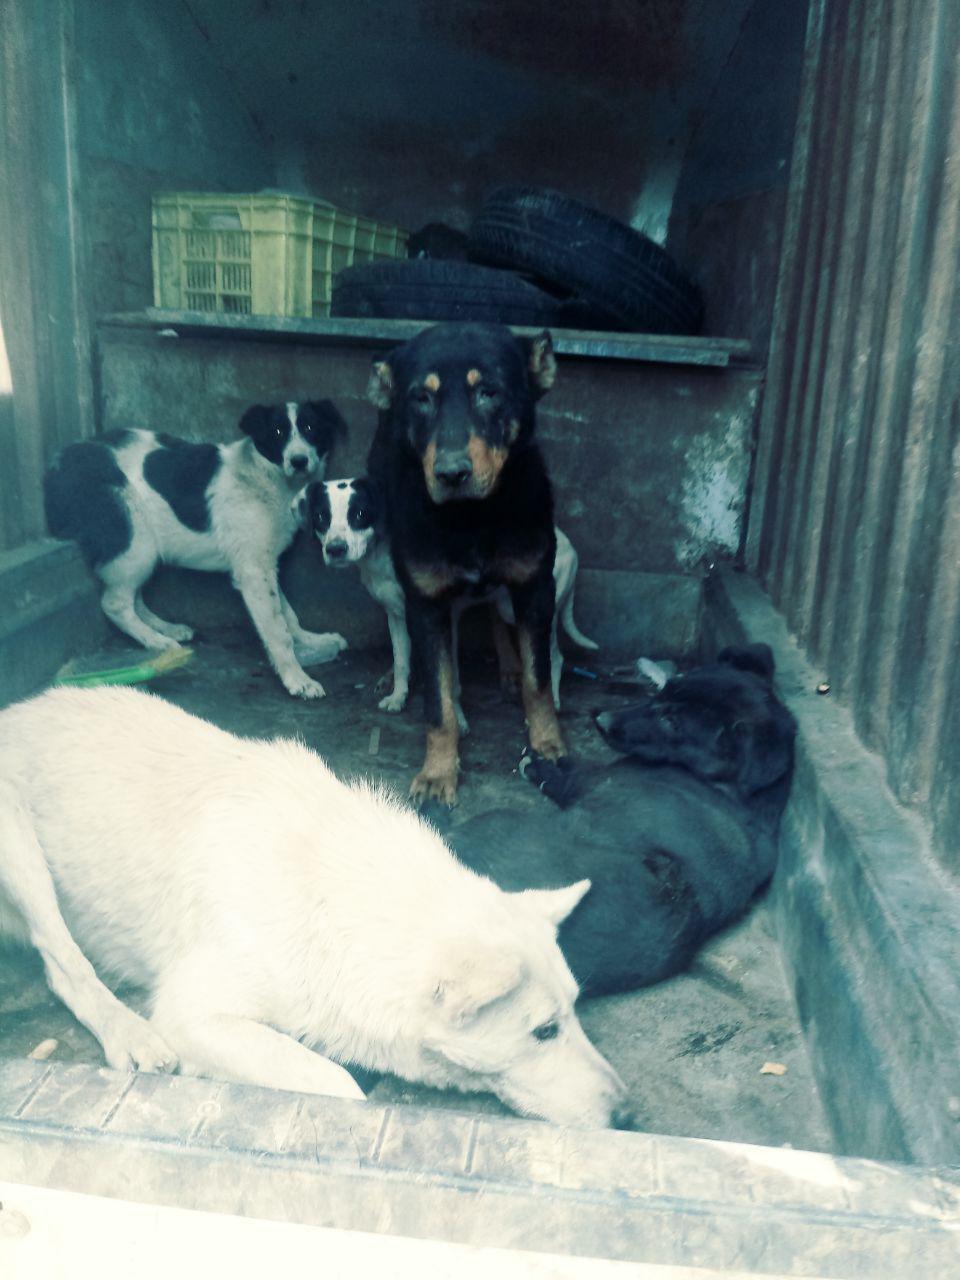 زنده گیری بیش از 150 قلاده سگ در هفته گذشته